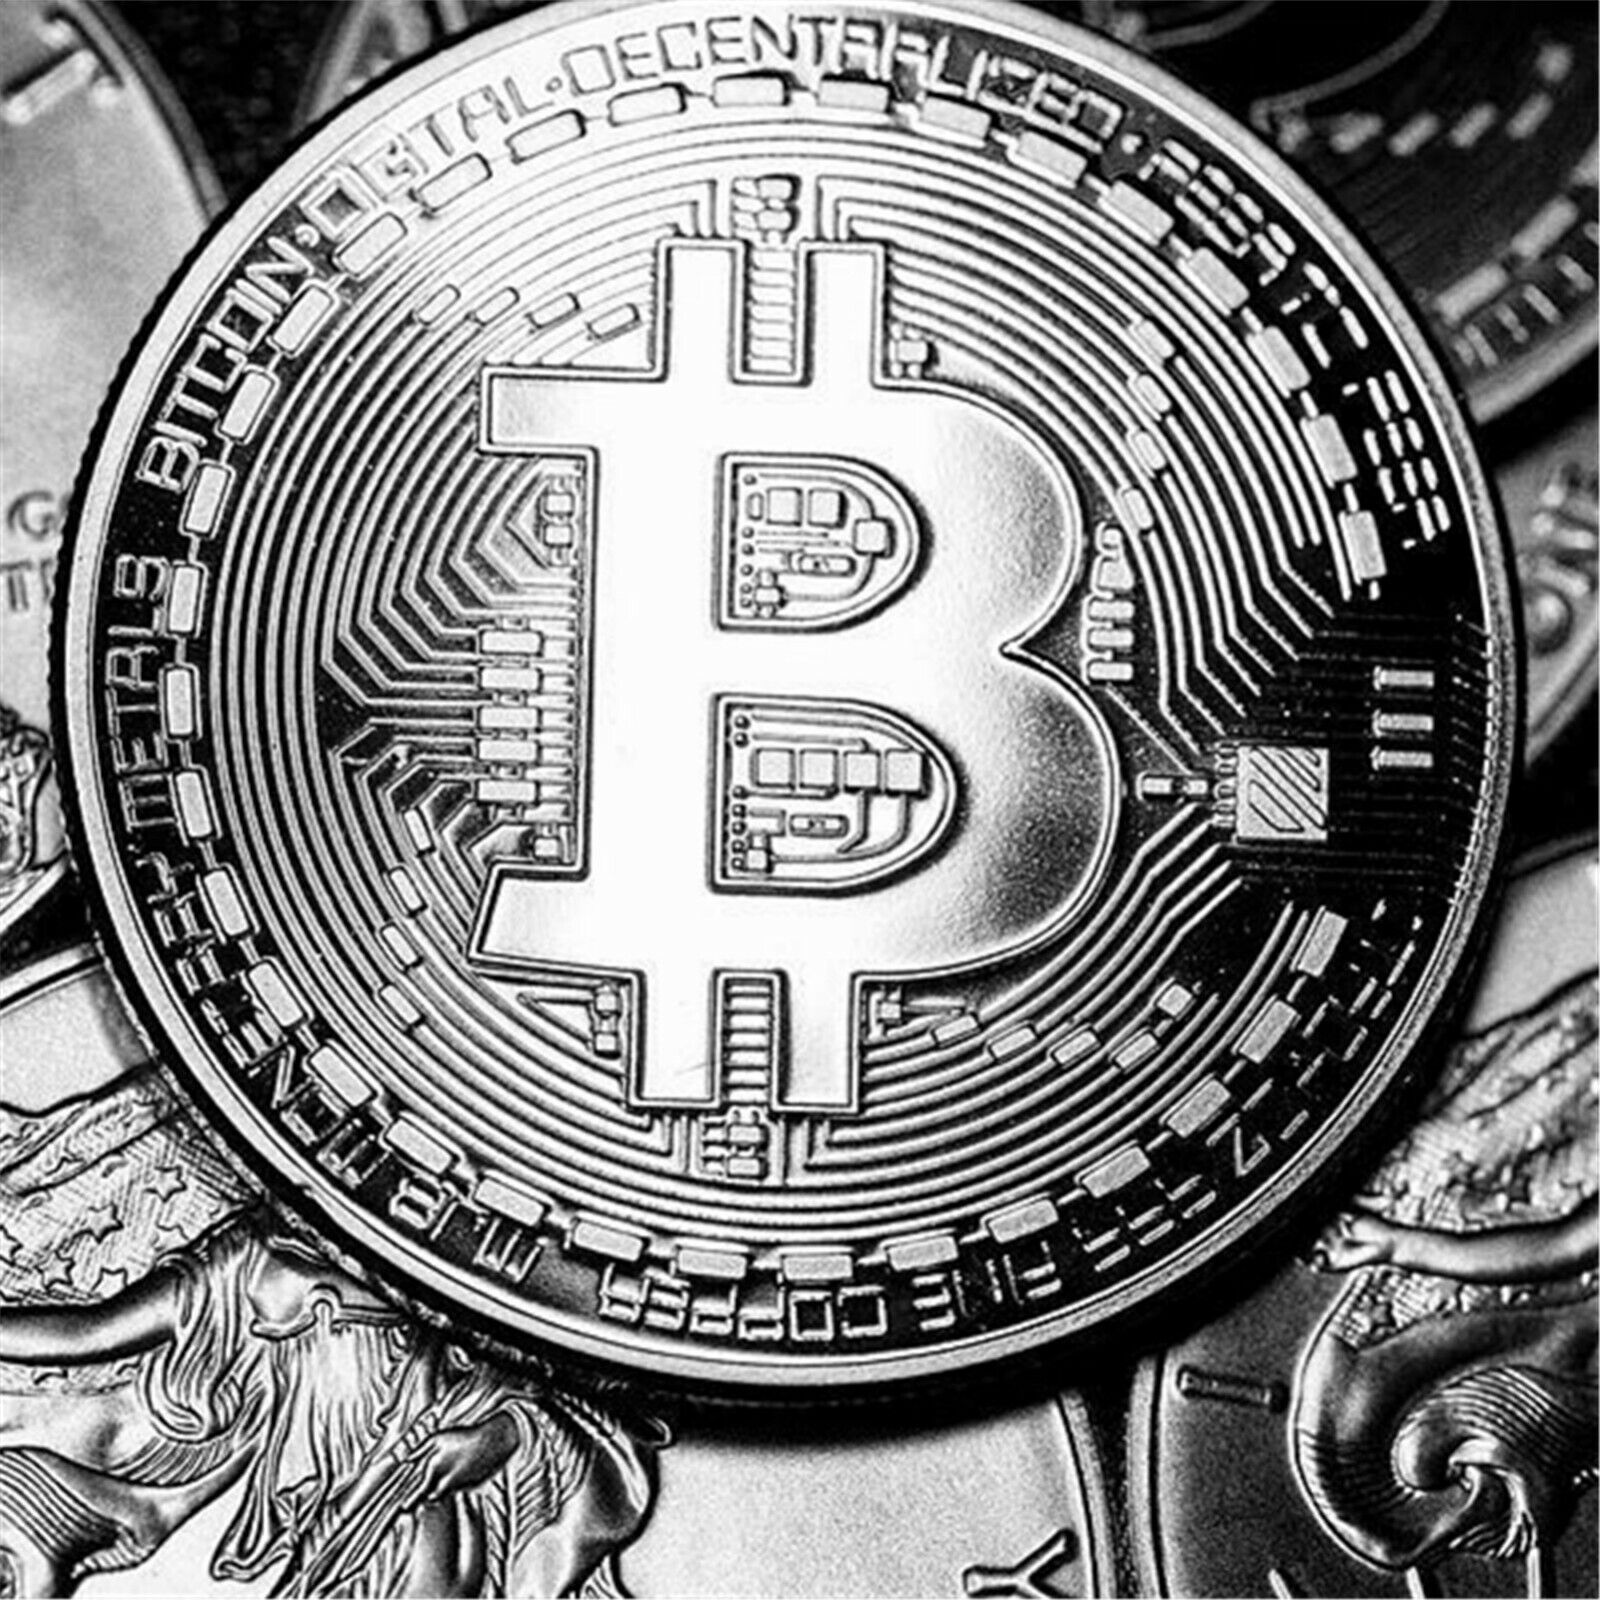 1PCS Bitcoin Commemorative Coins 1oz Silver Bit Coin Physical Crypto Coin HODL